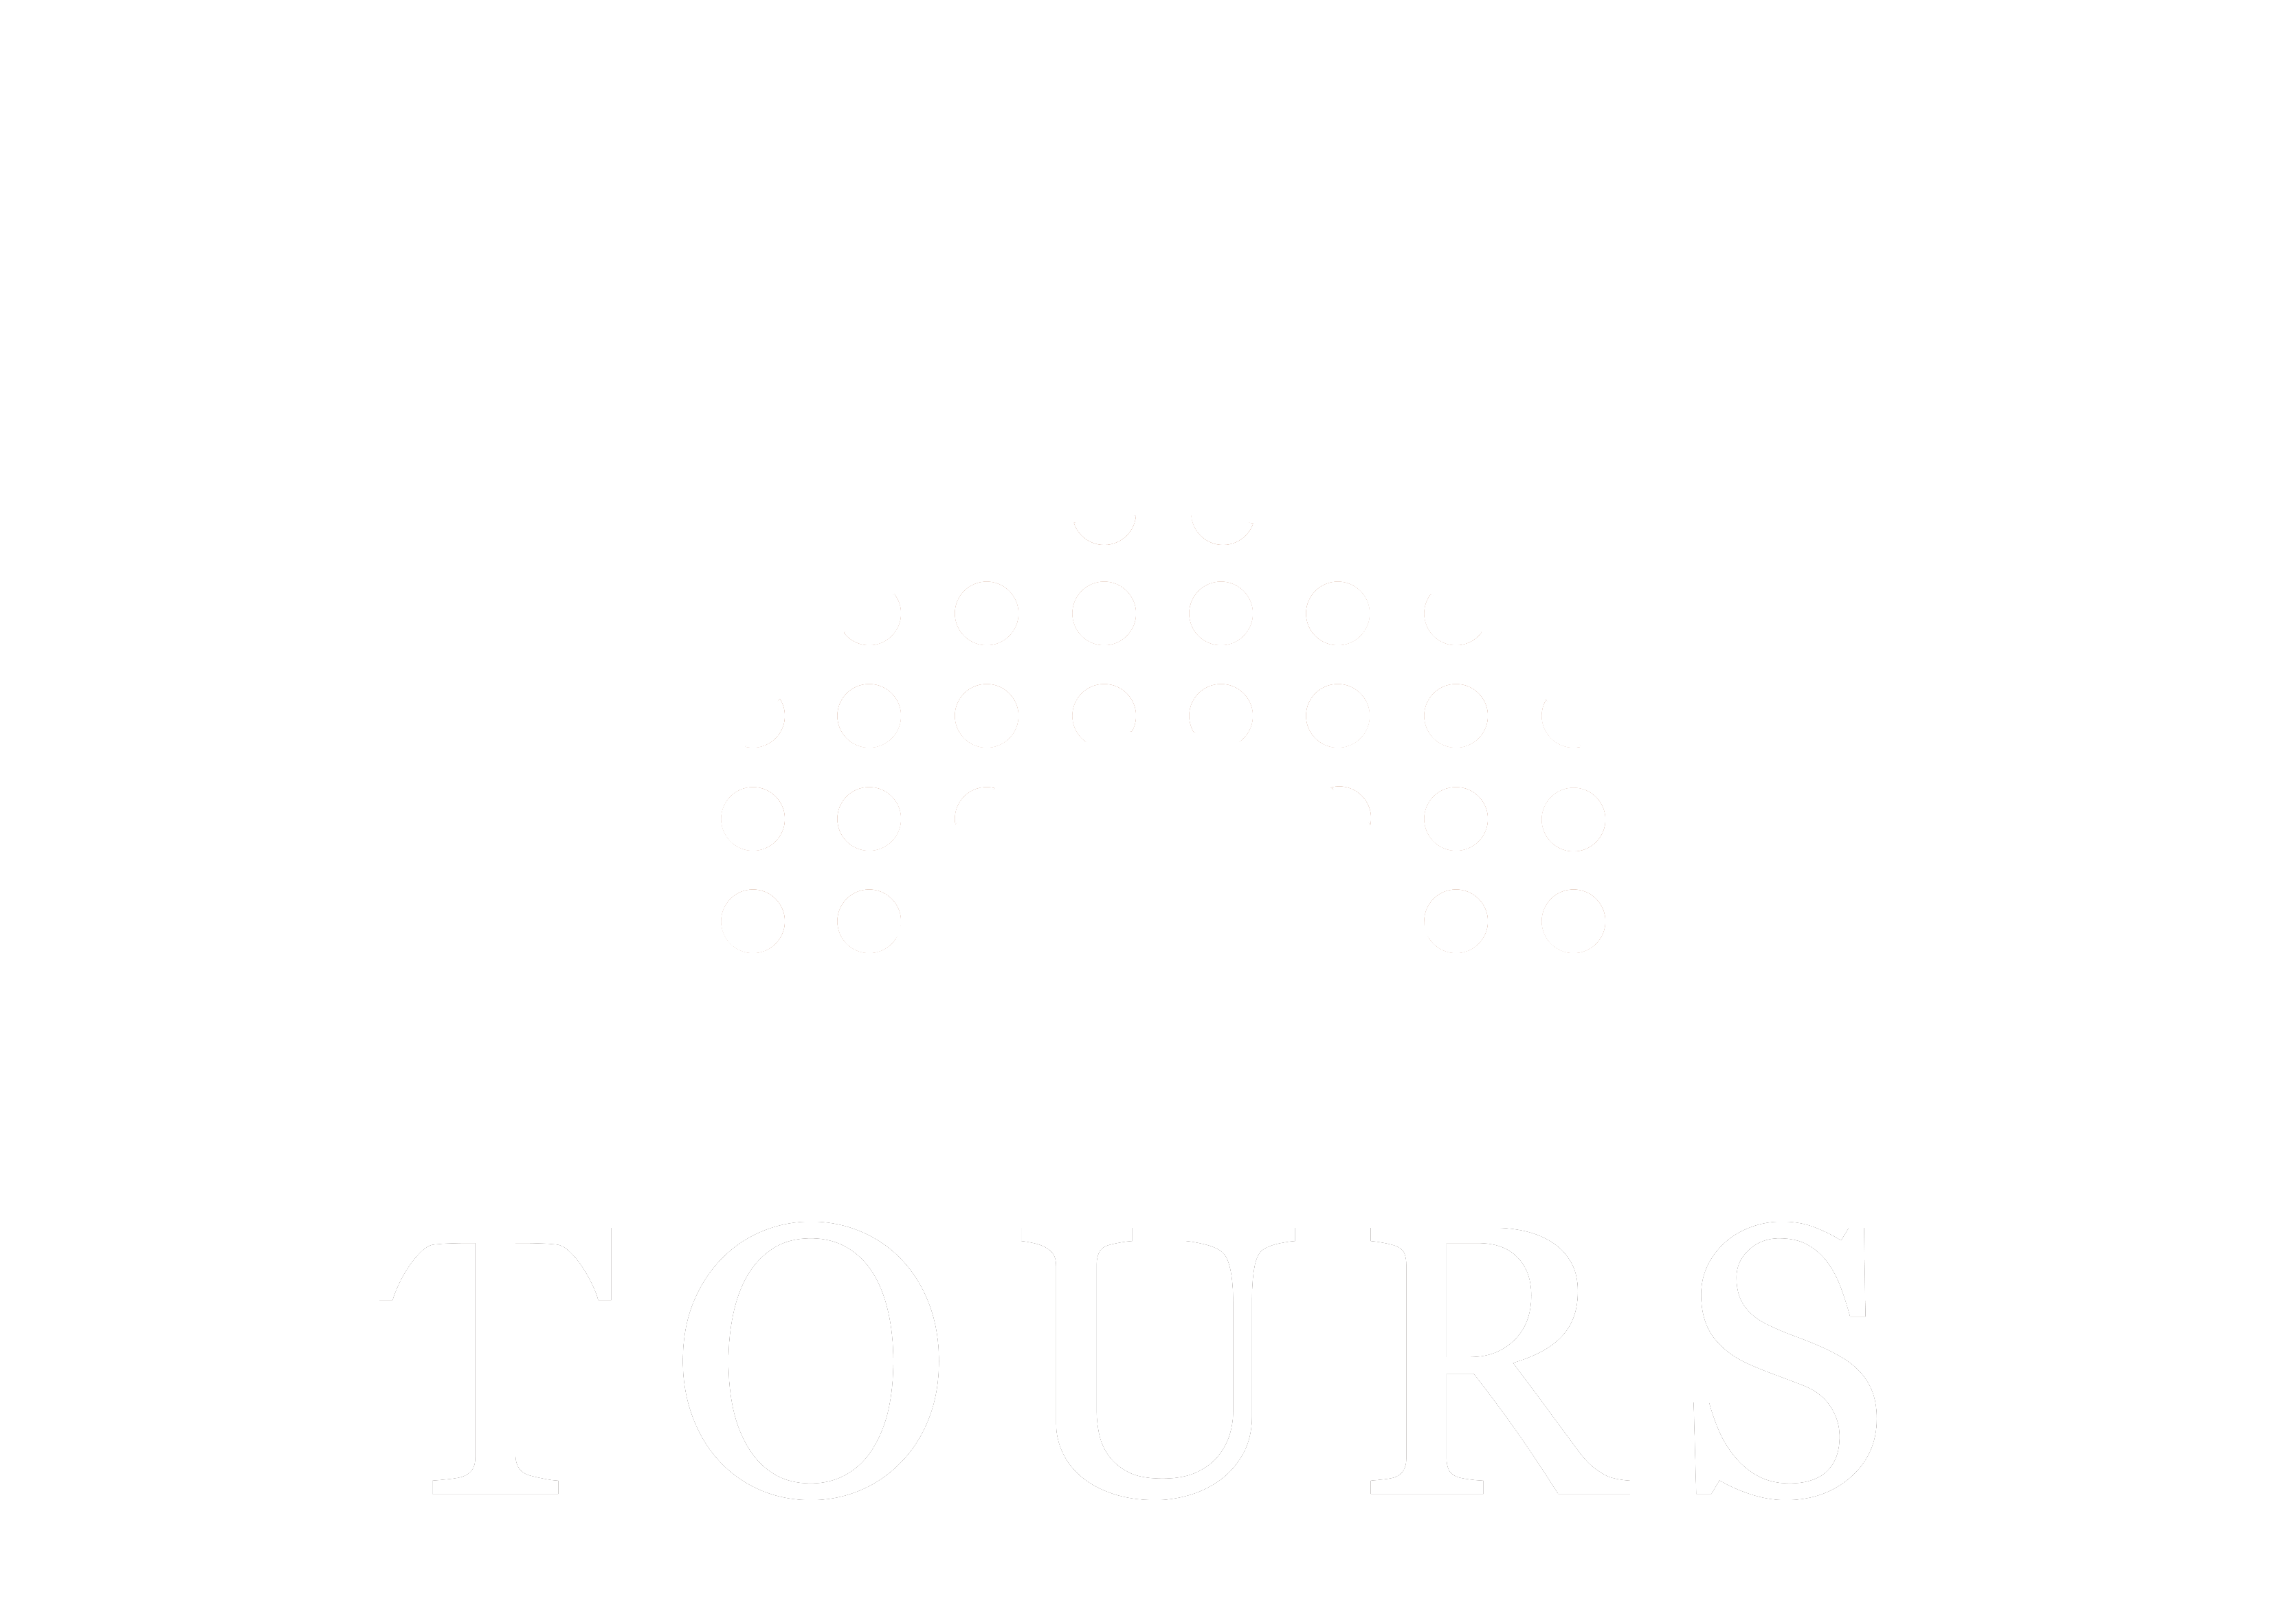 Malaga Tours